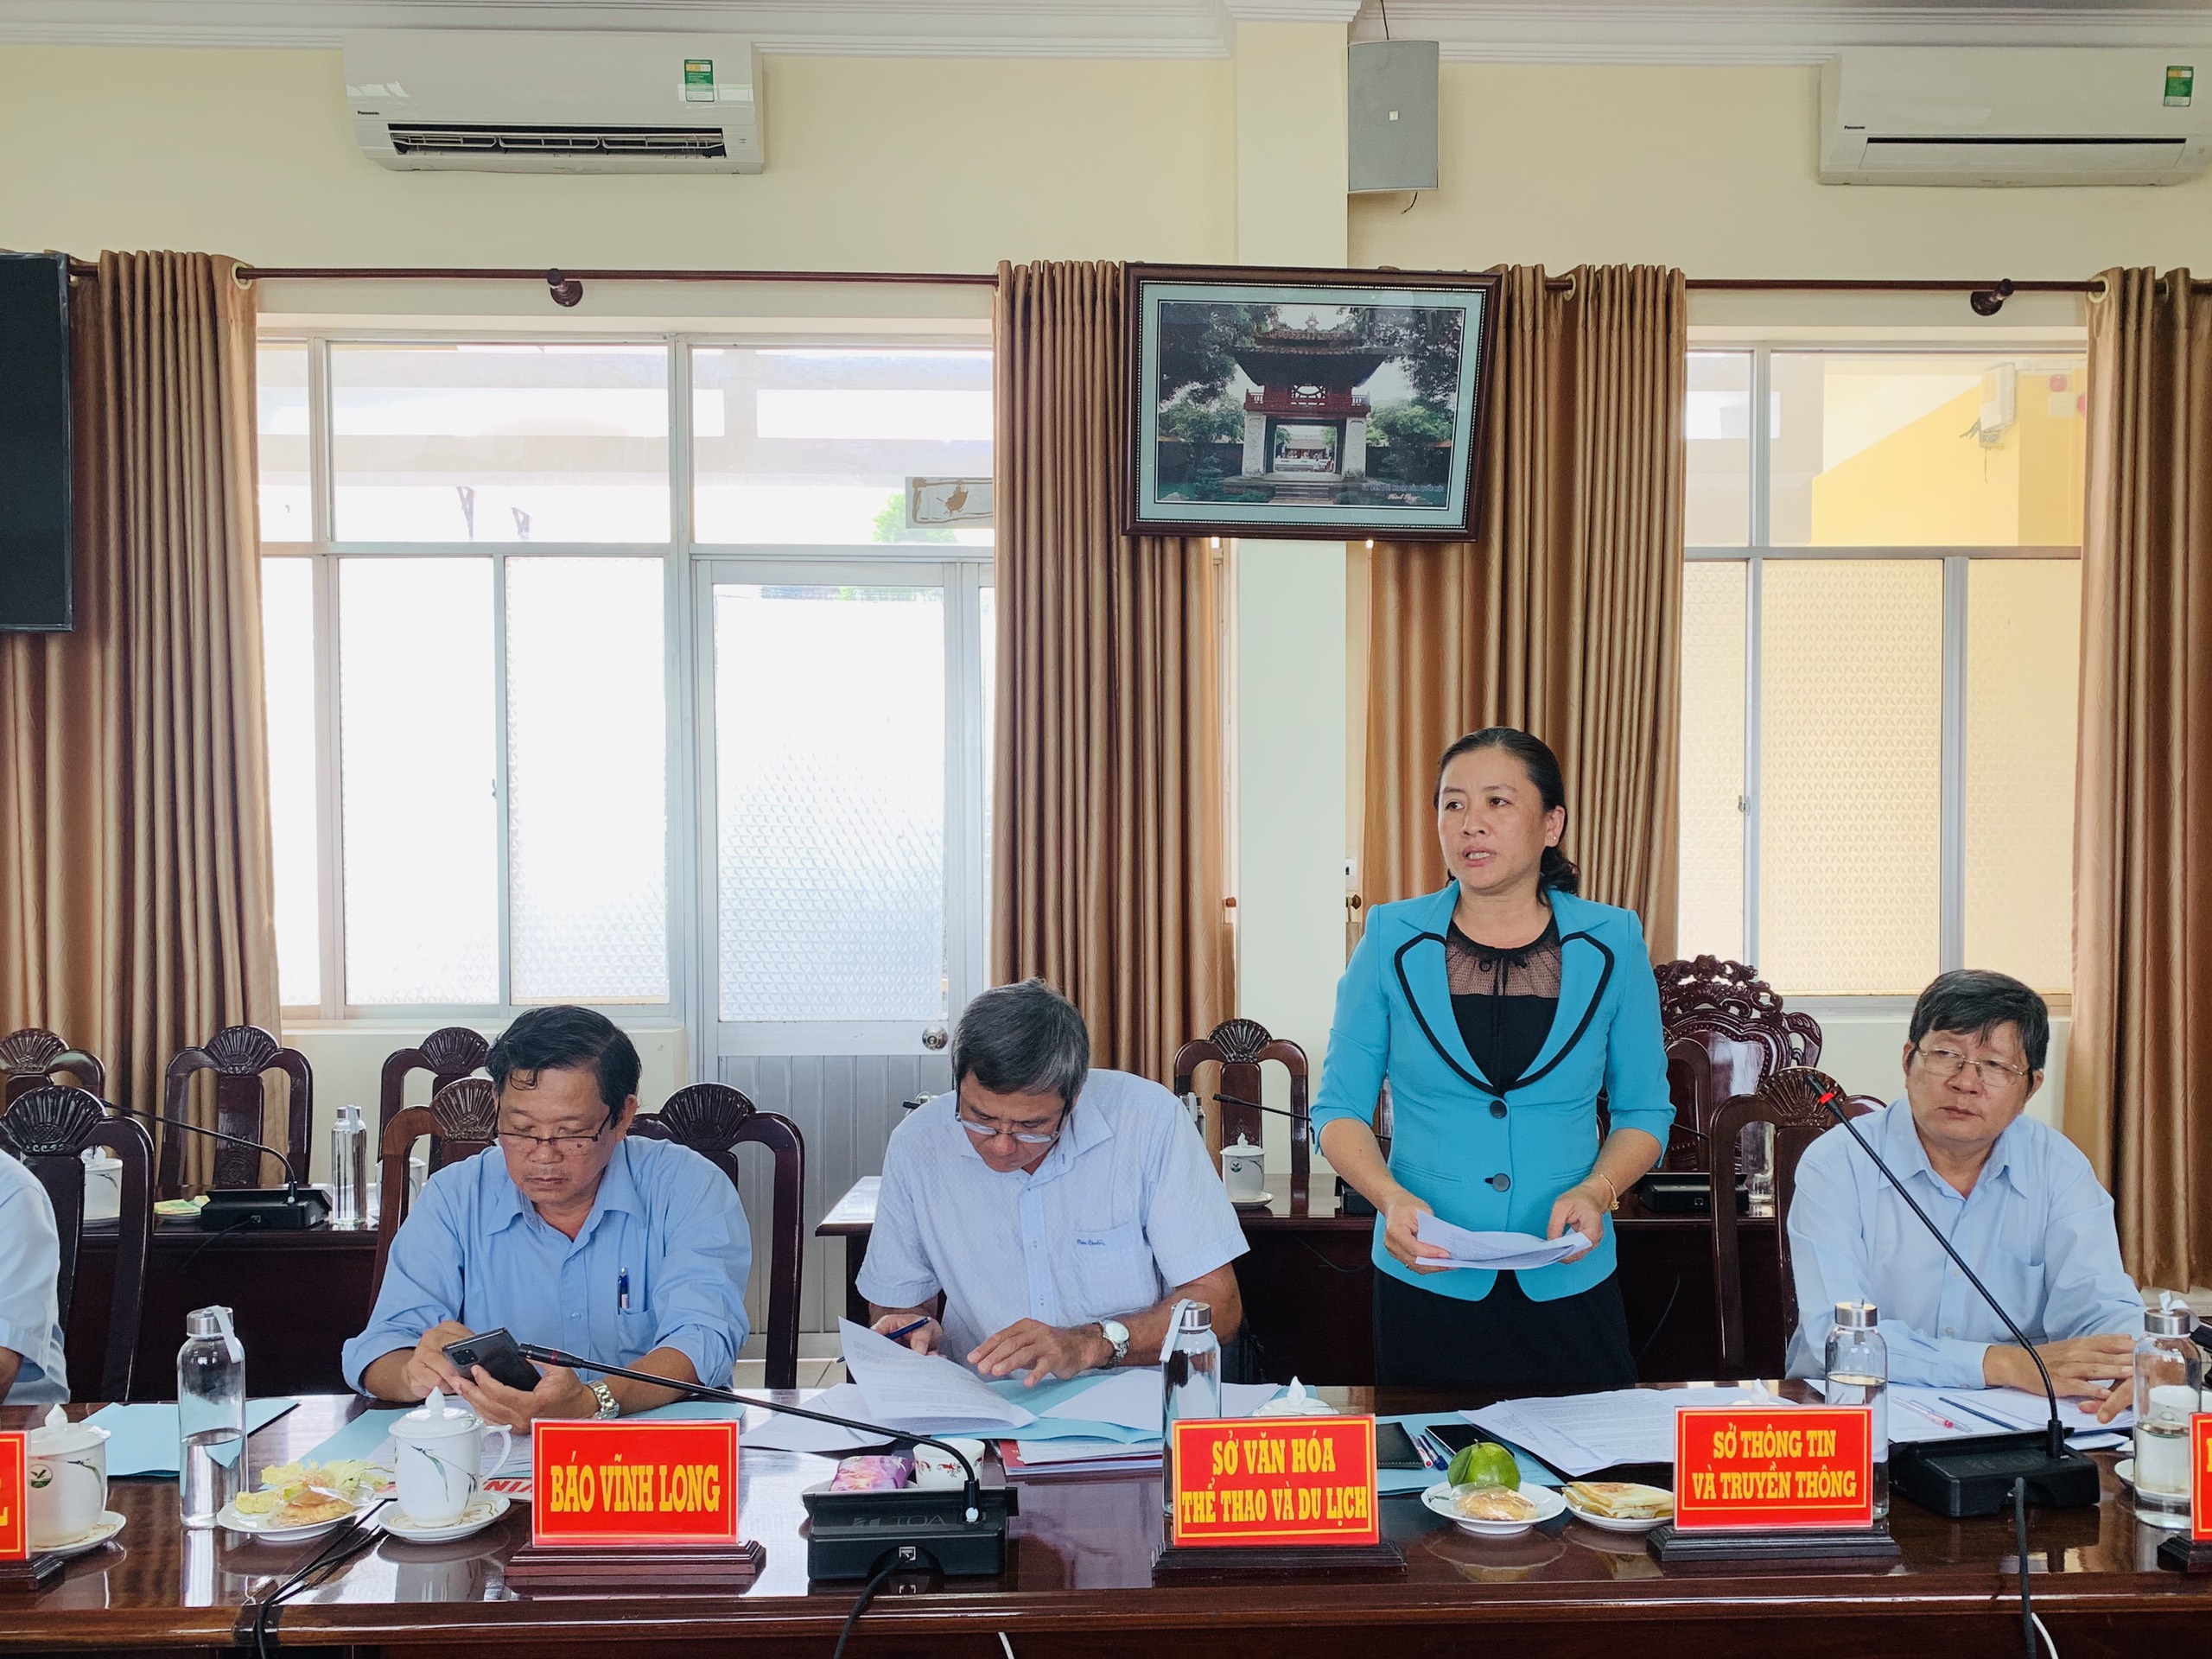 Đồng chí Đoàn Hồng Hạnh, Giám đốc Sở Thông tin và Truyền thông tỉnh Vĩnh Long báo cáo kết quả nhiệm kỳ 2020-2025.